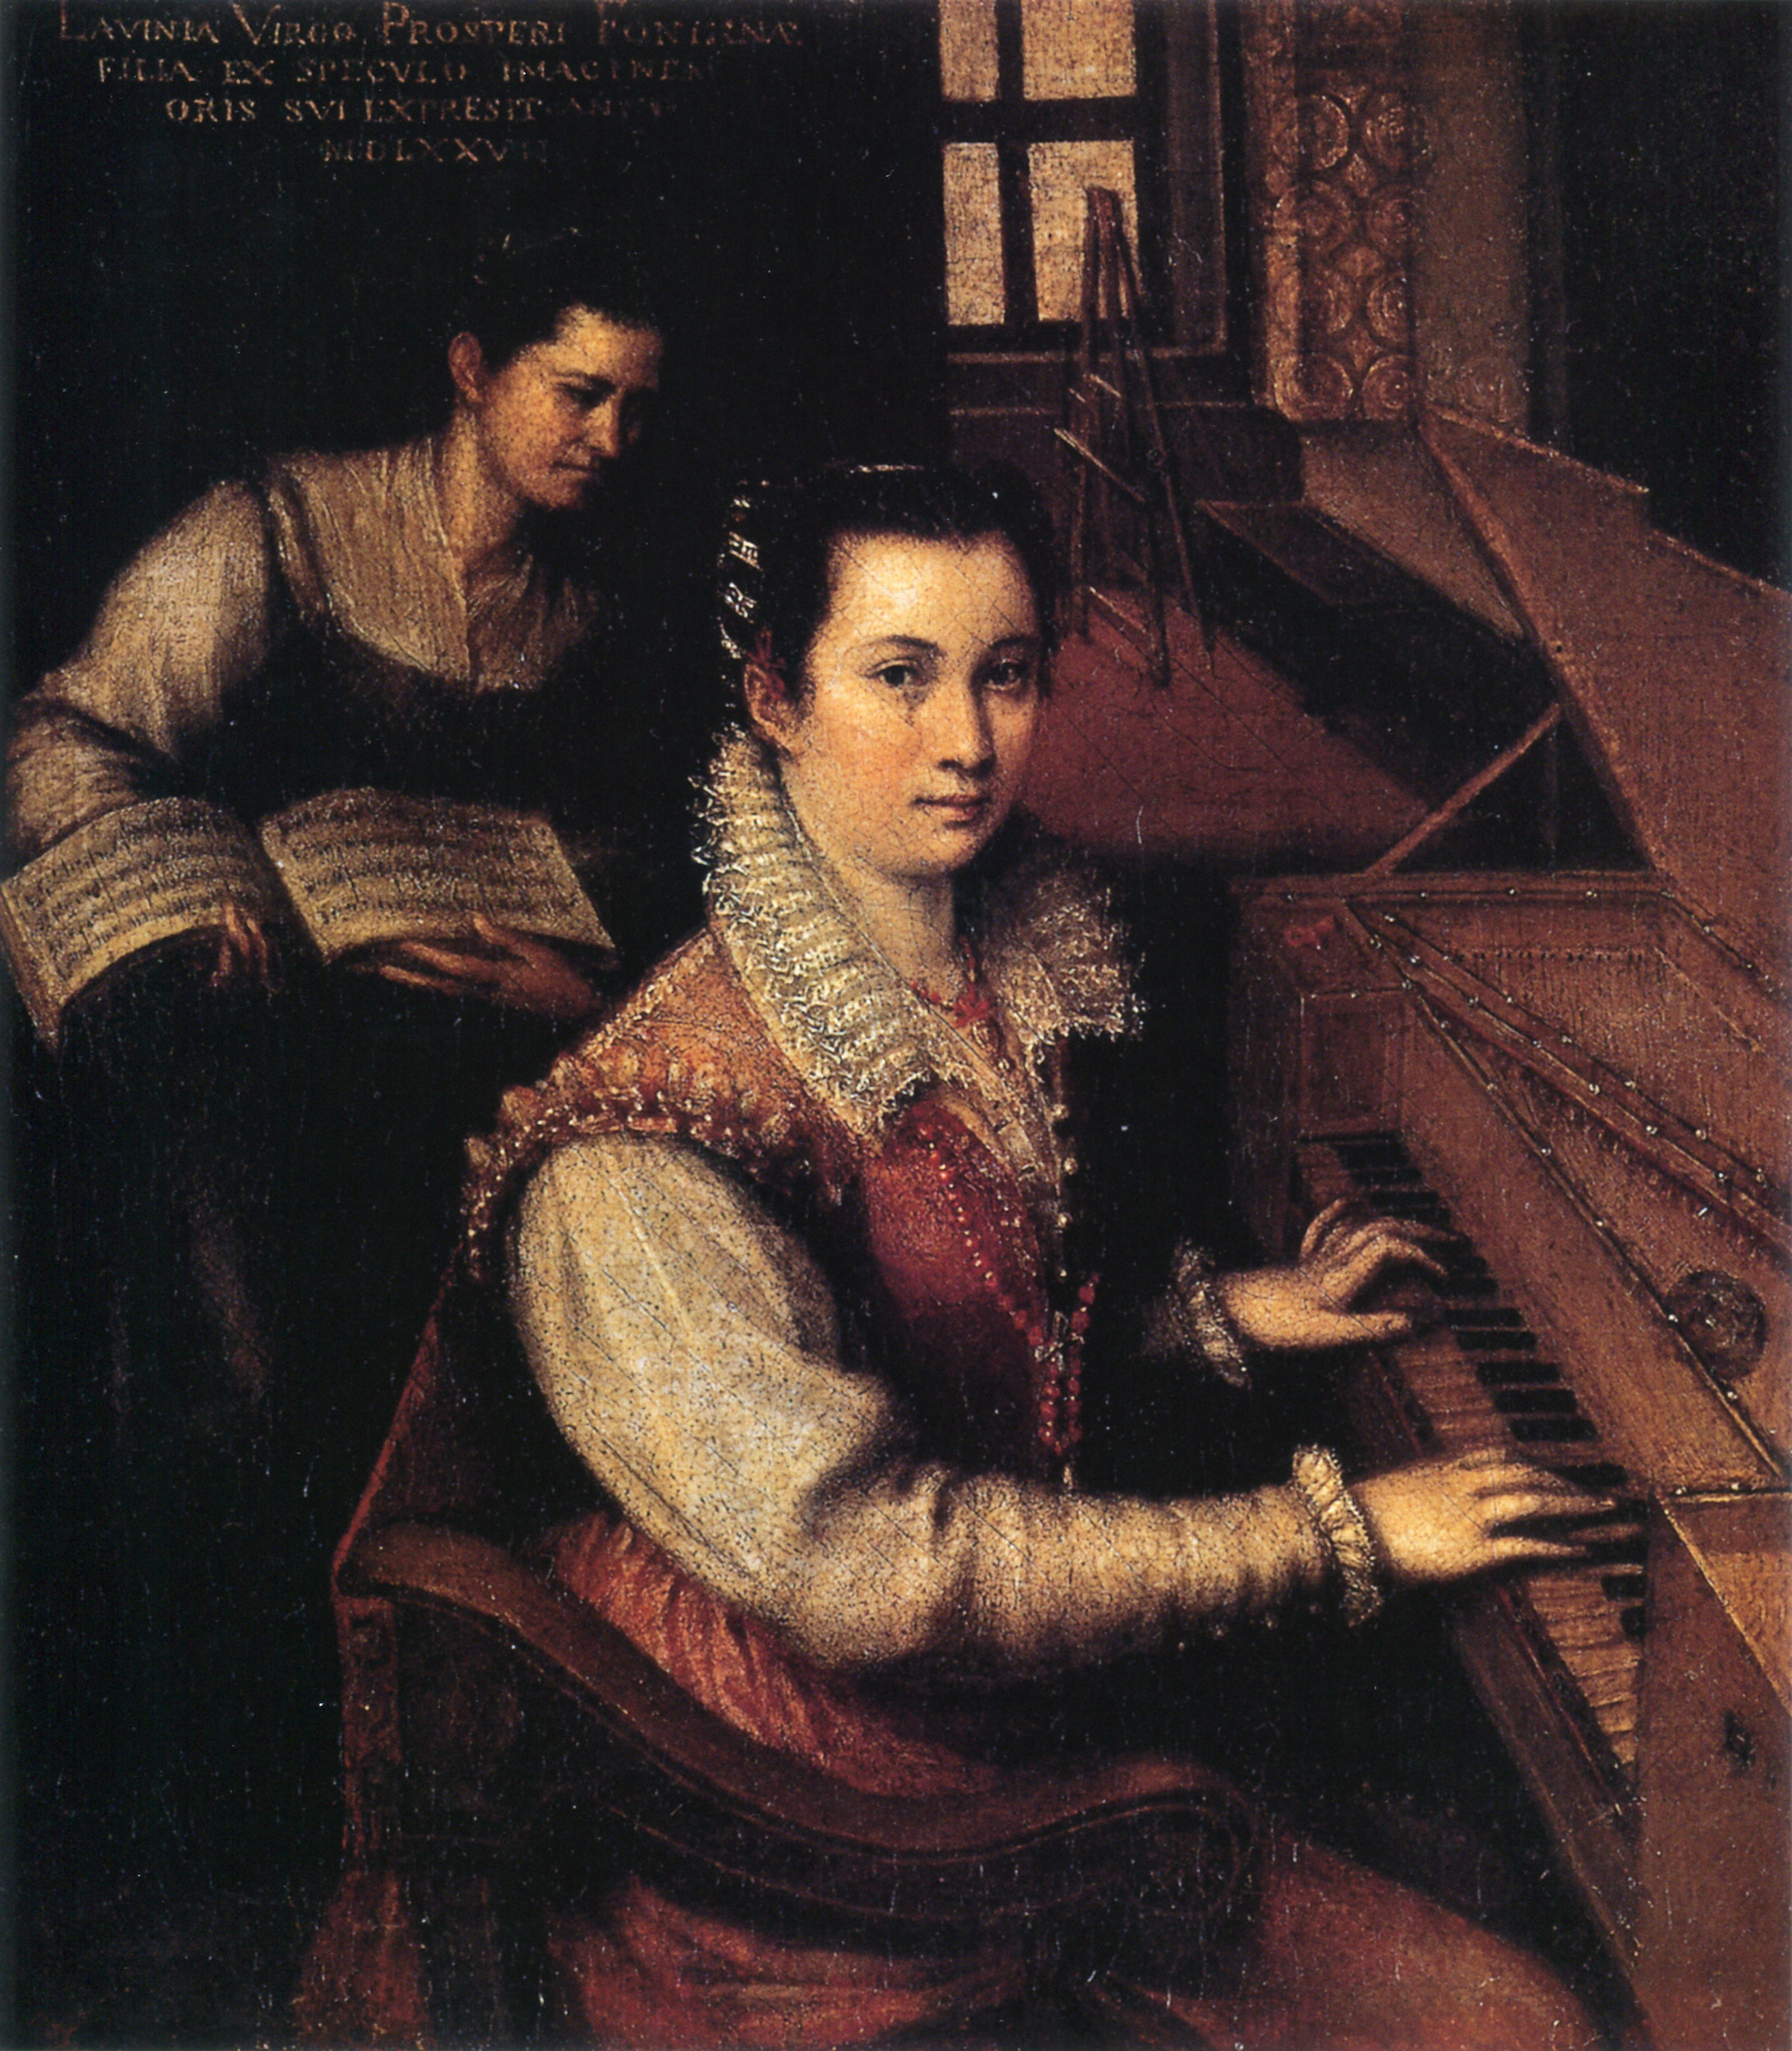 Lavinia Fontana - Agosto 24, 1552 - Agosto 11, 1614